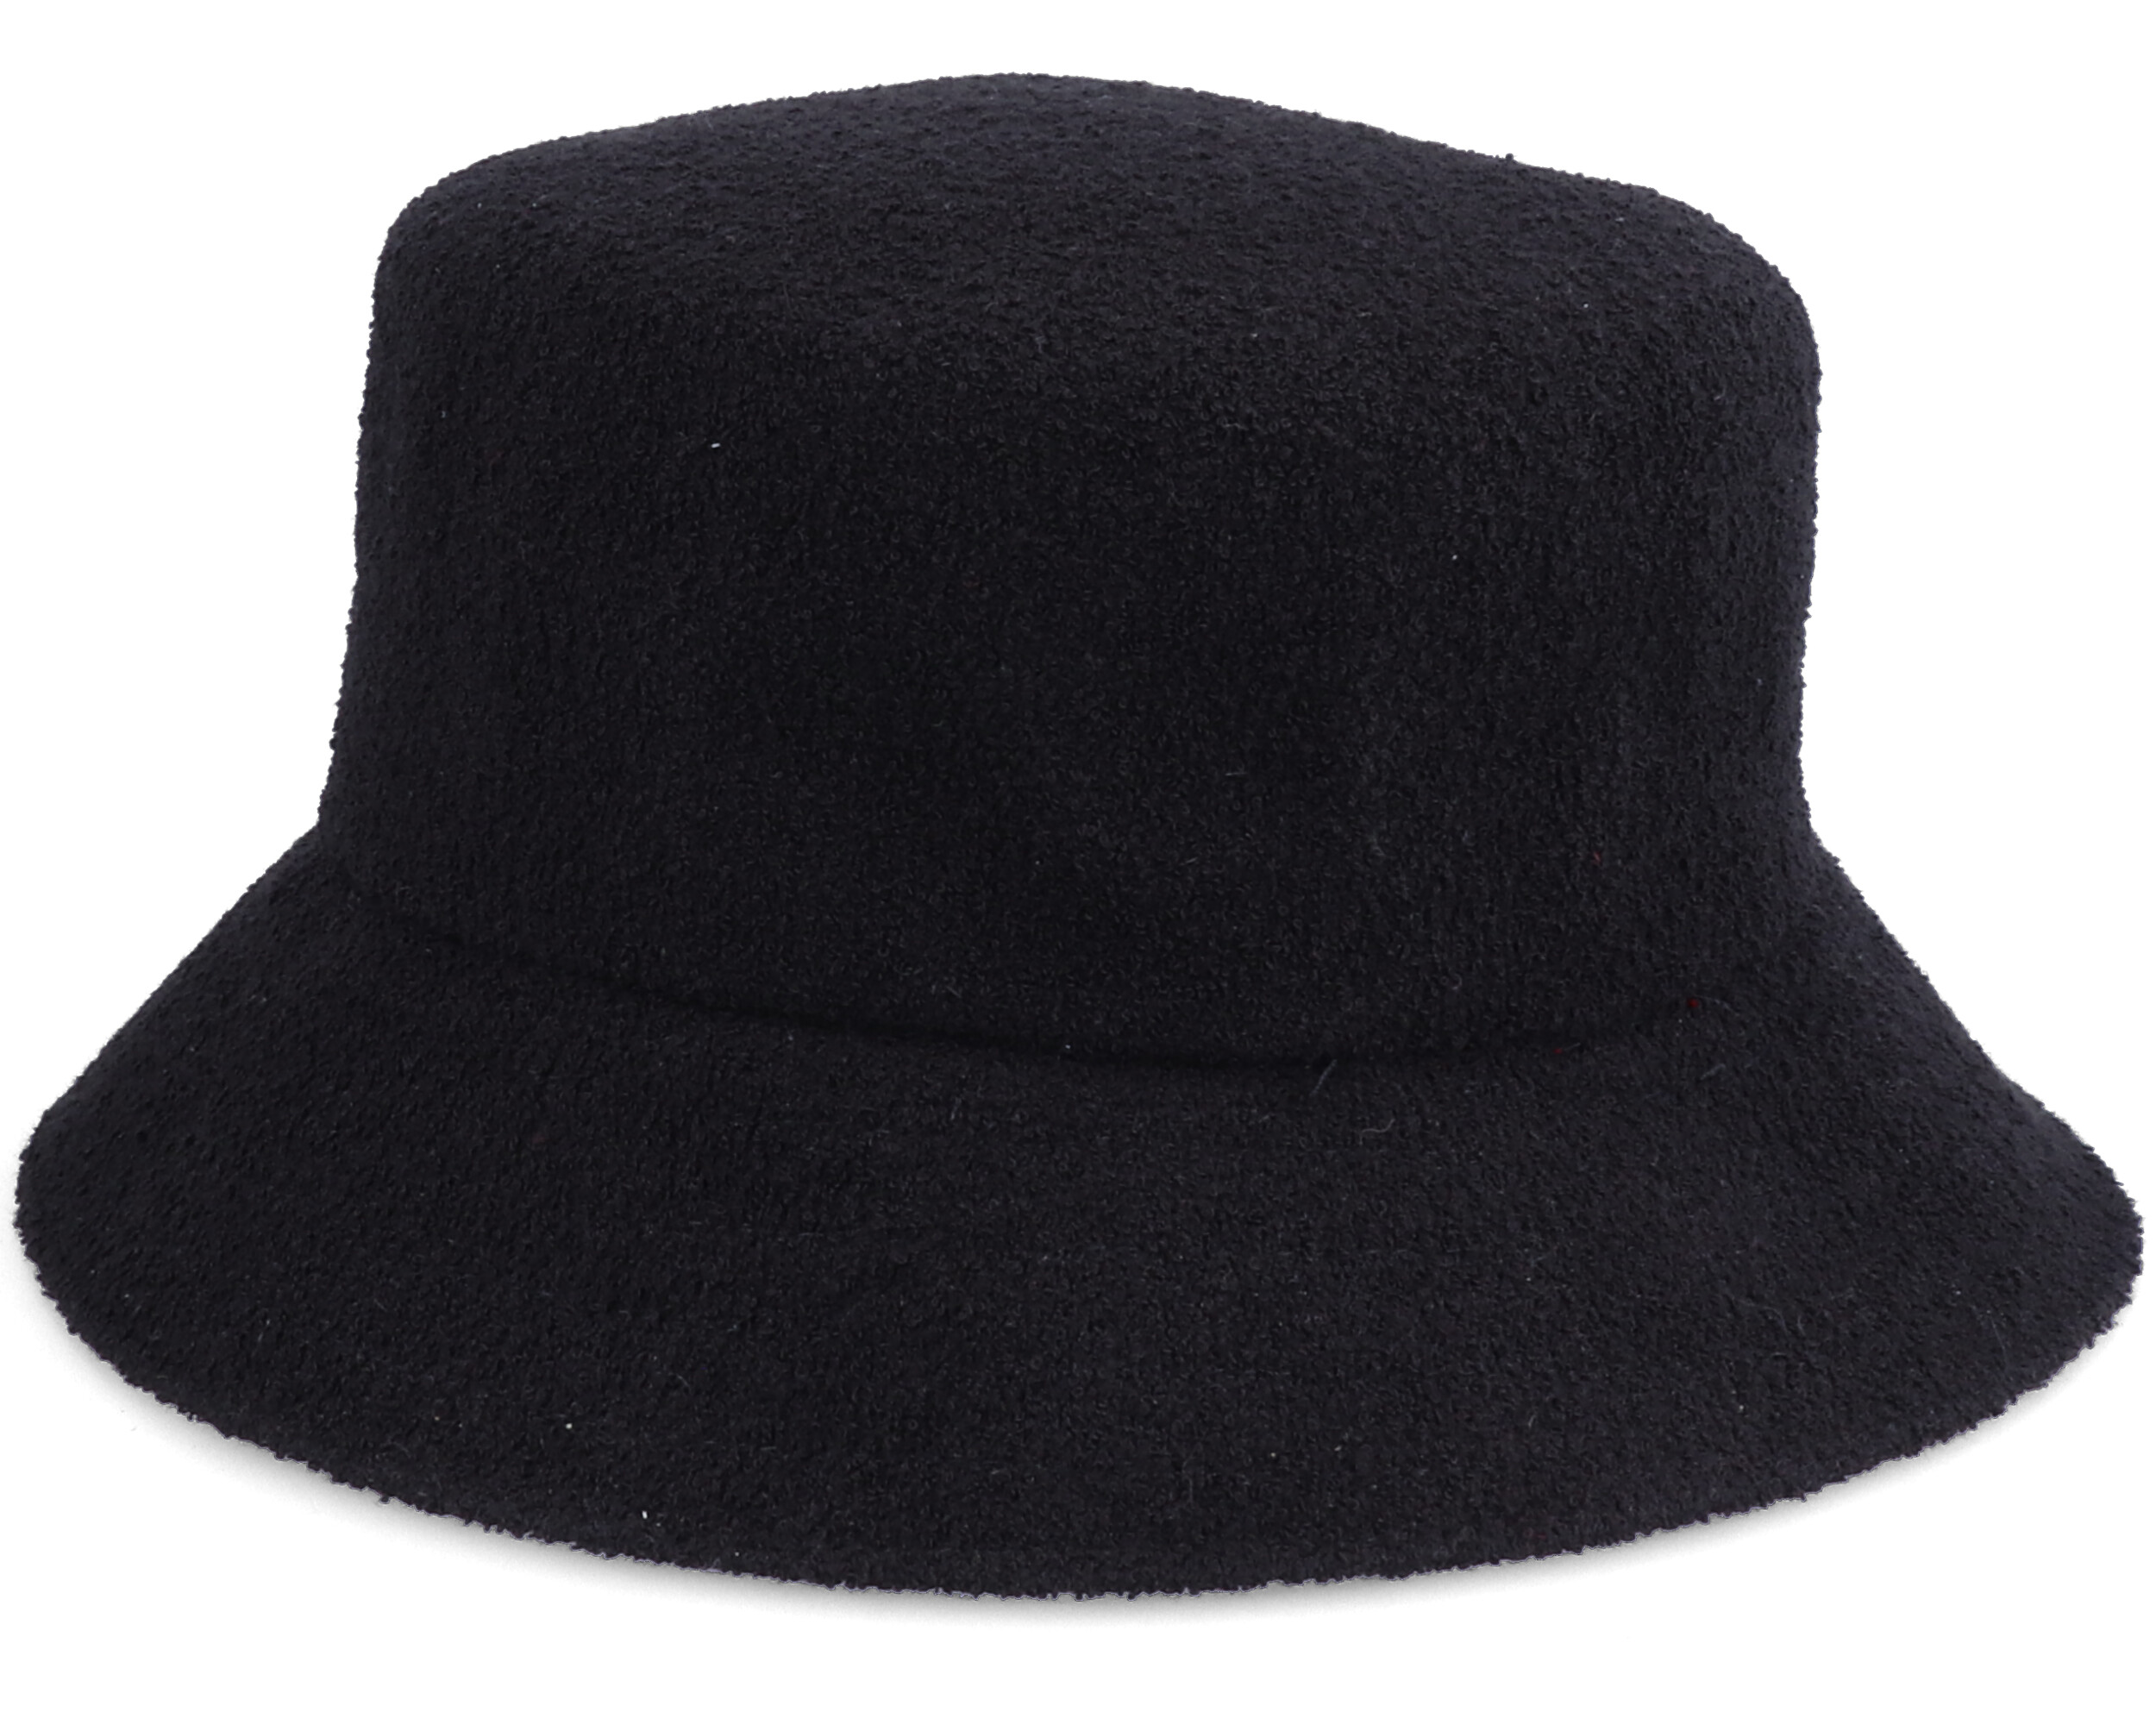 Bermuda Black Bucket - Kangol hats | Hatstore.co.uk